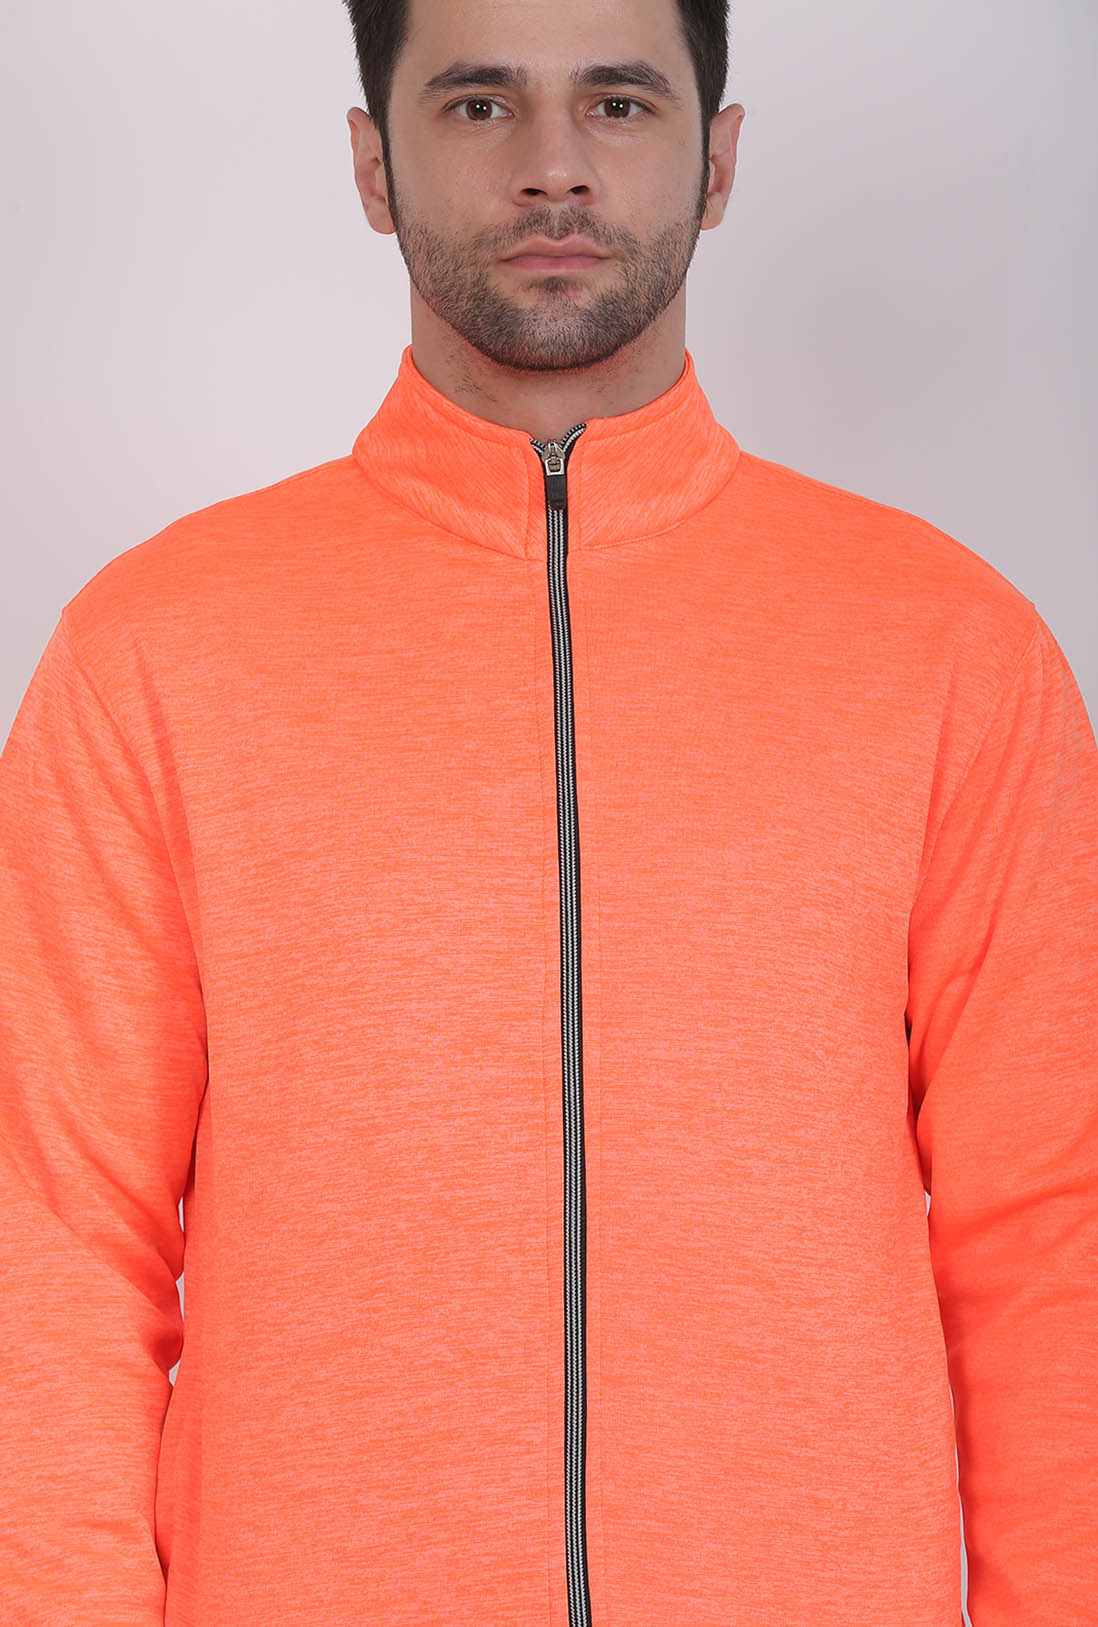 Sports Wear Men's Orange Zipper